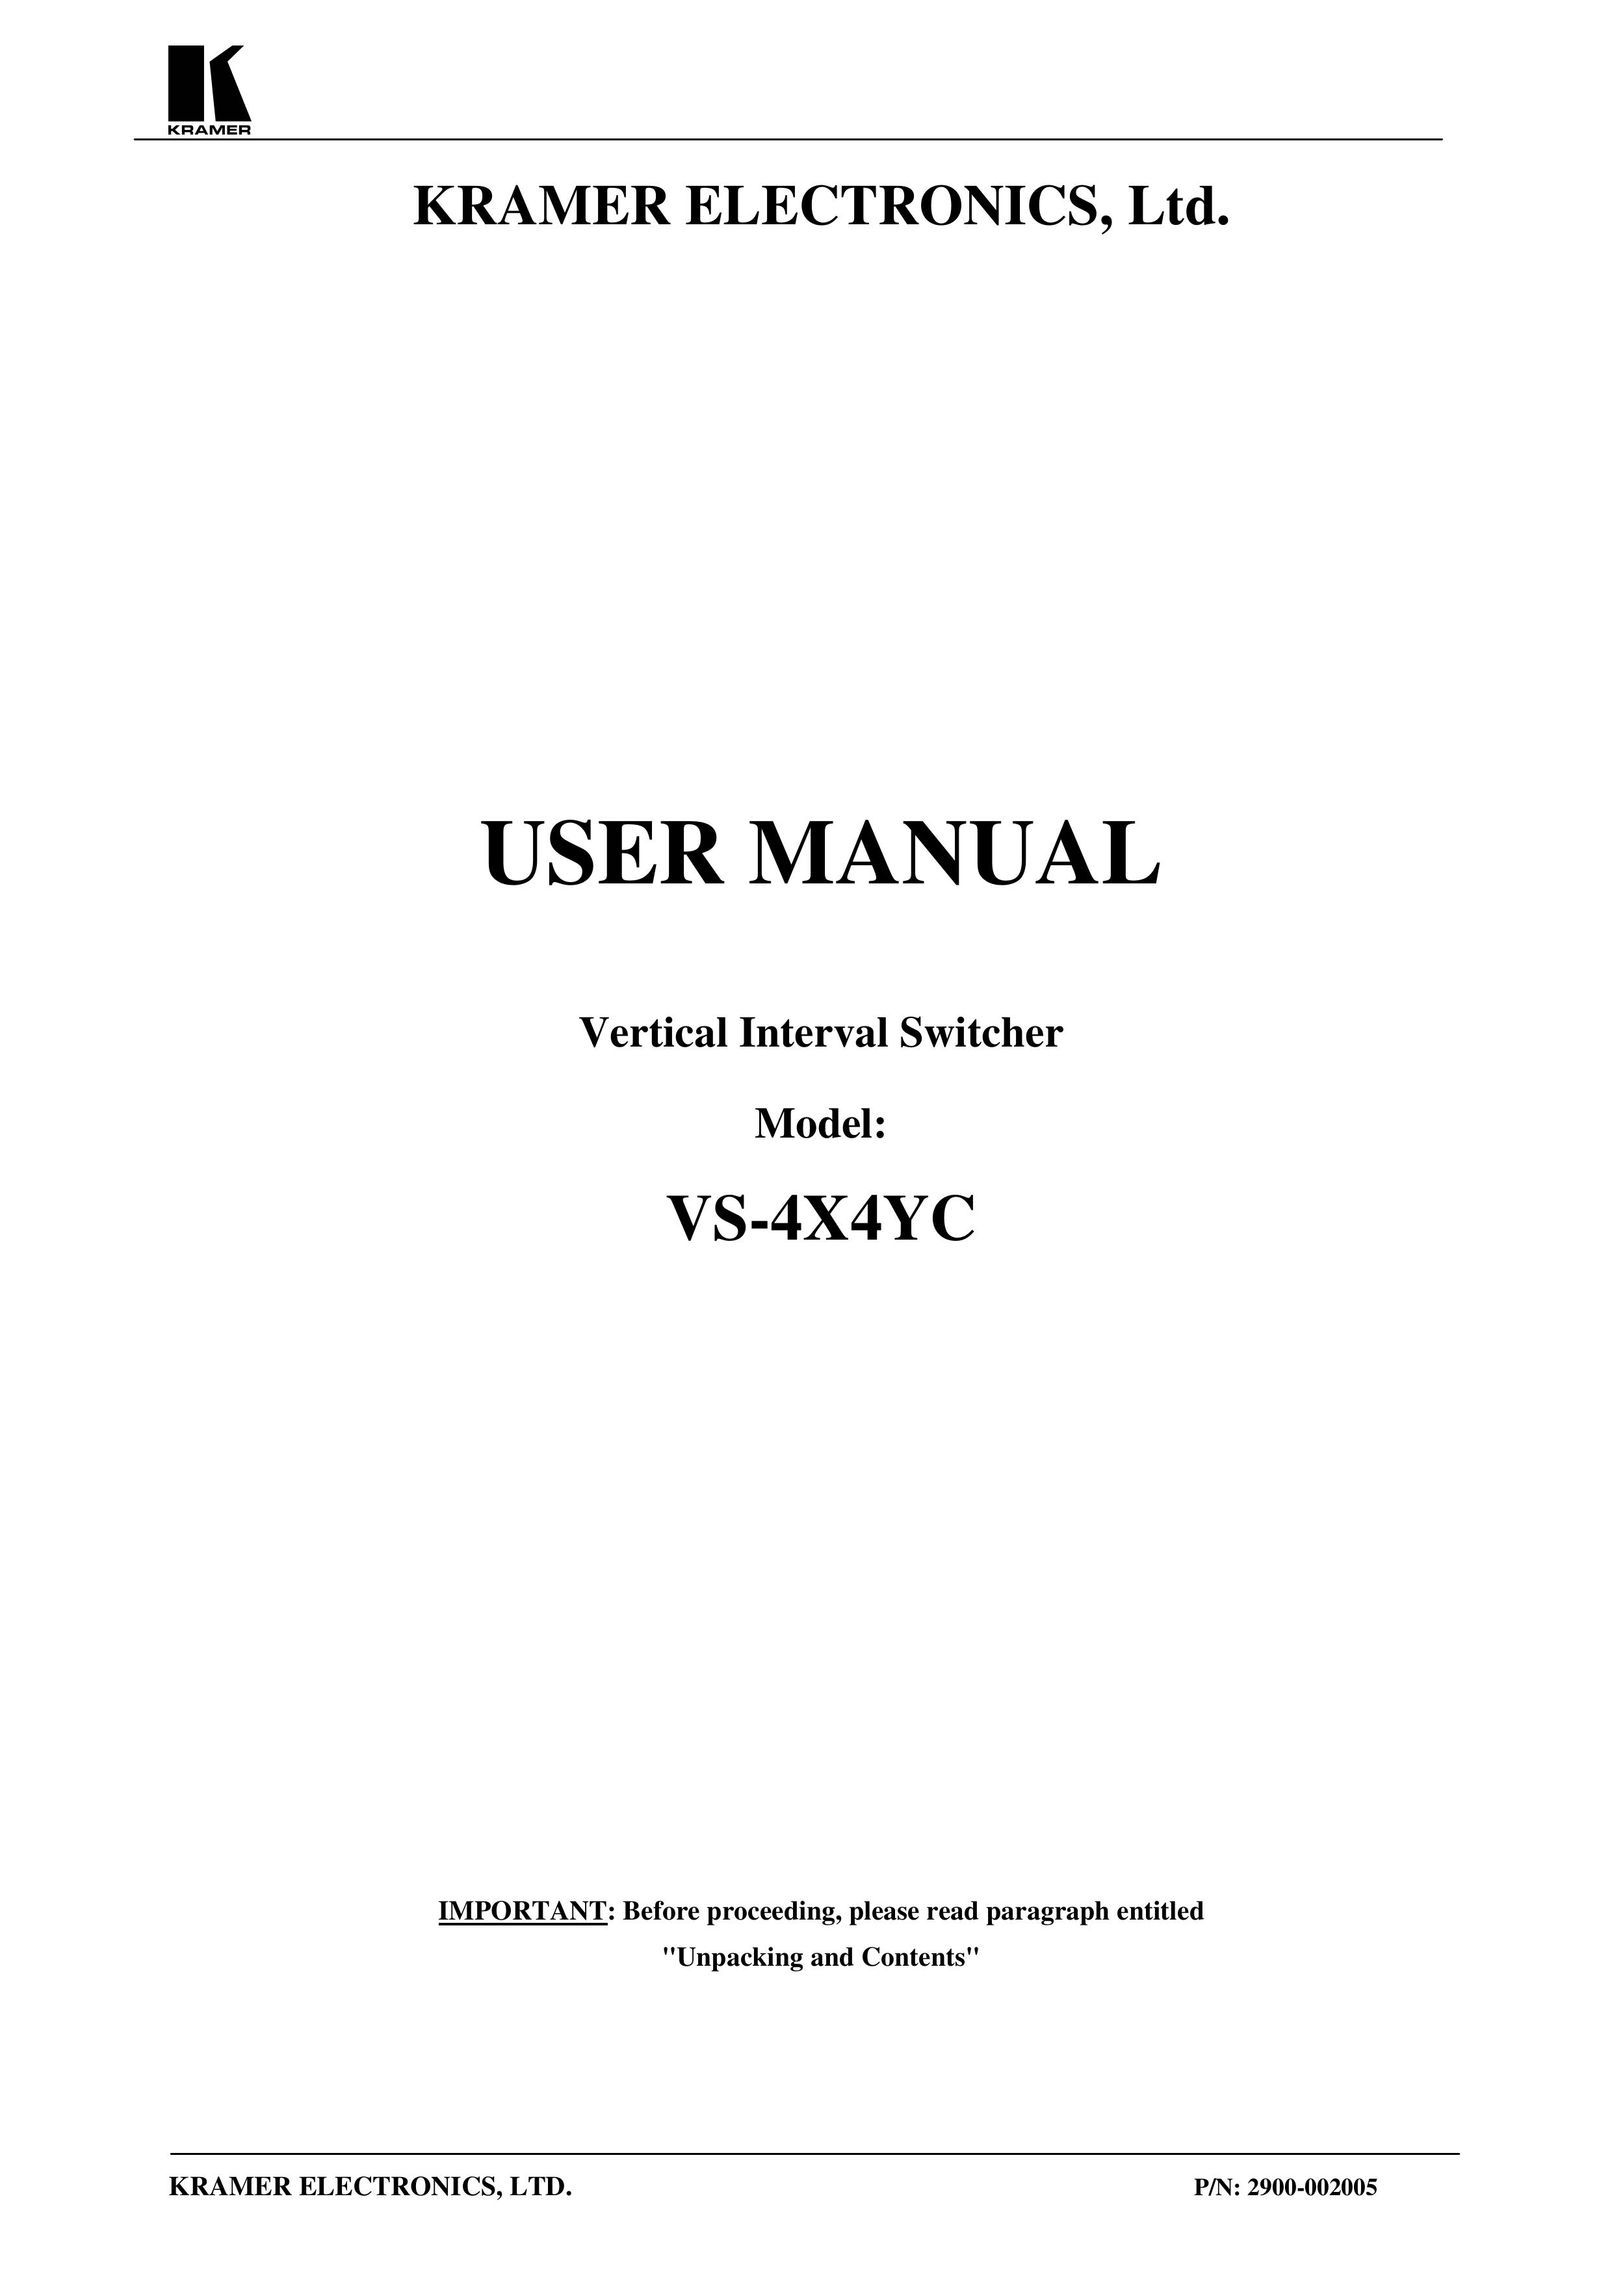 Kramer Electronics VS-4X4 TV Cables User Manual